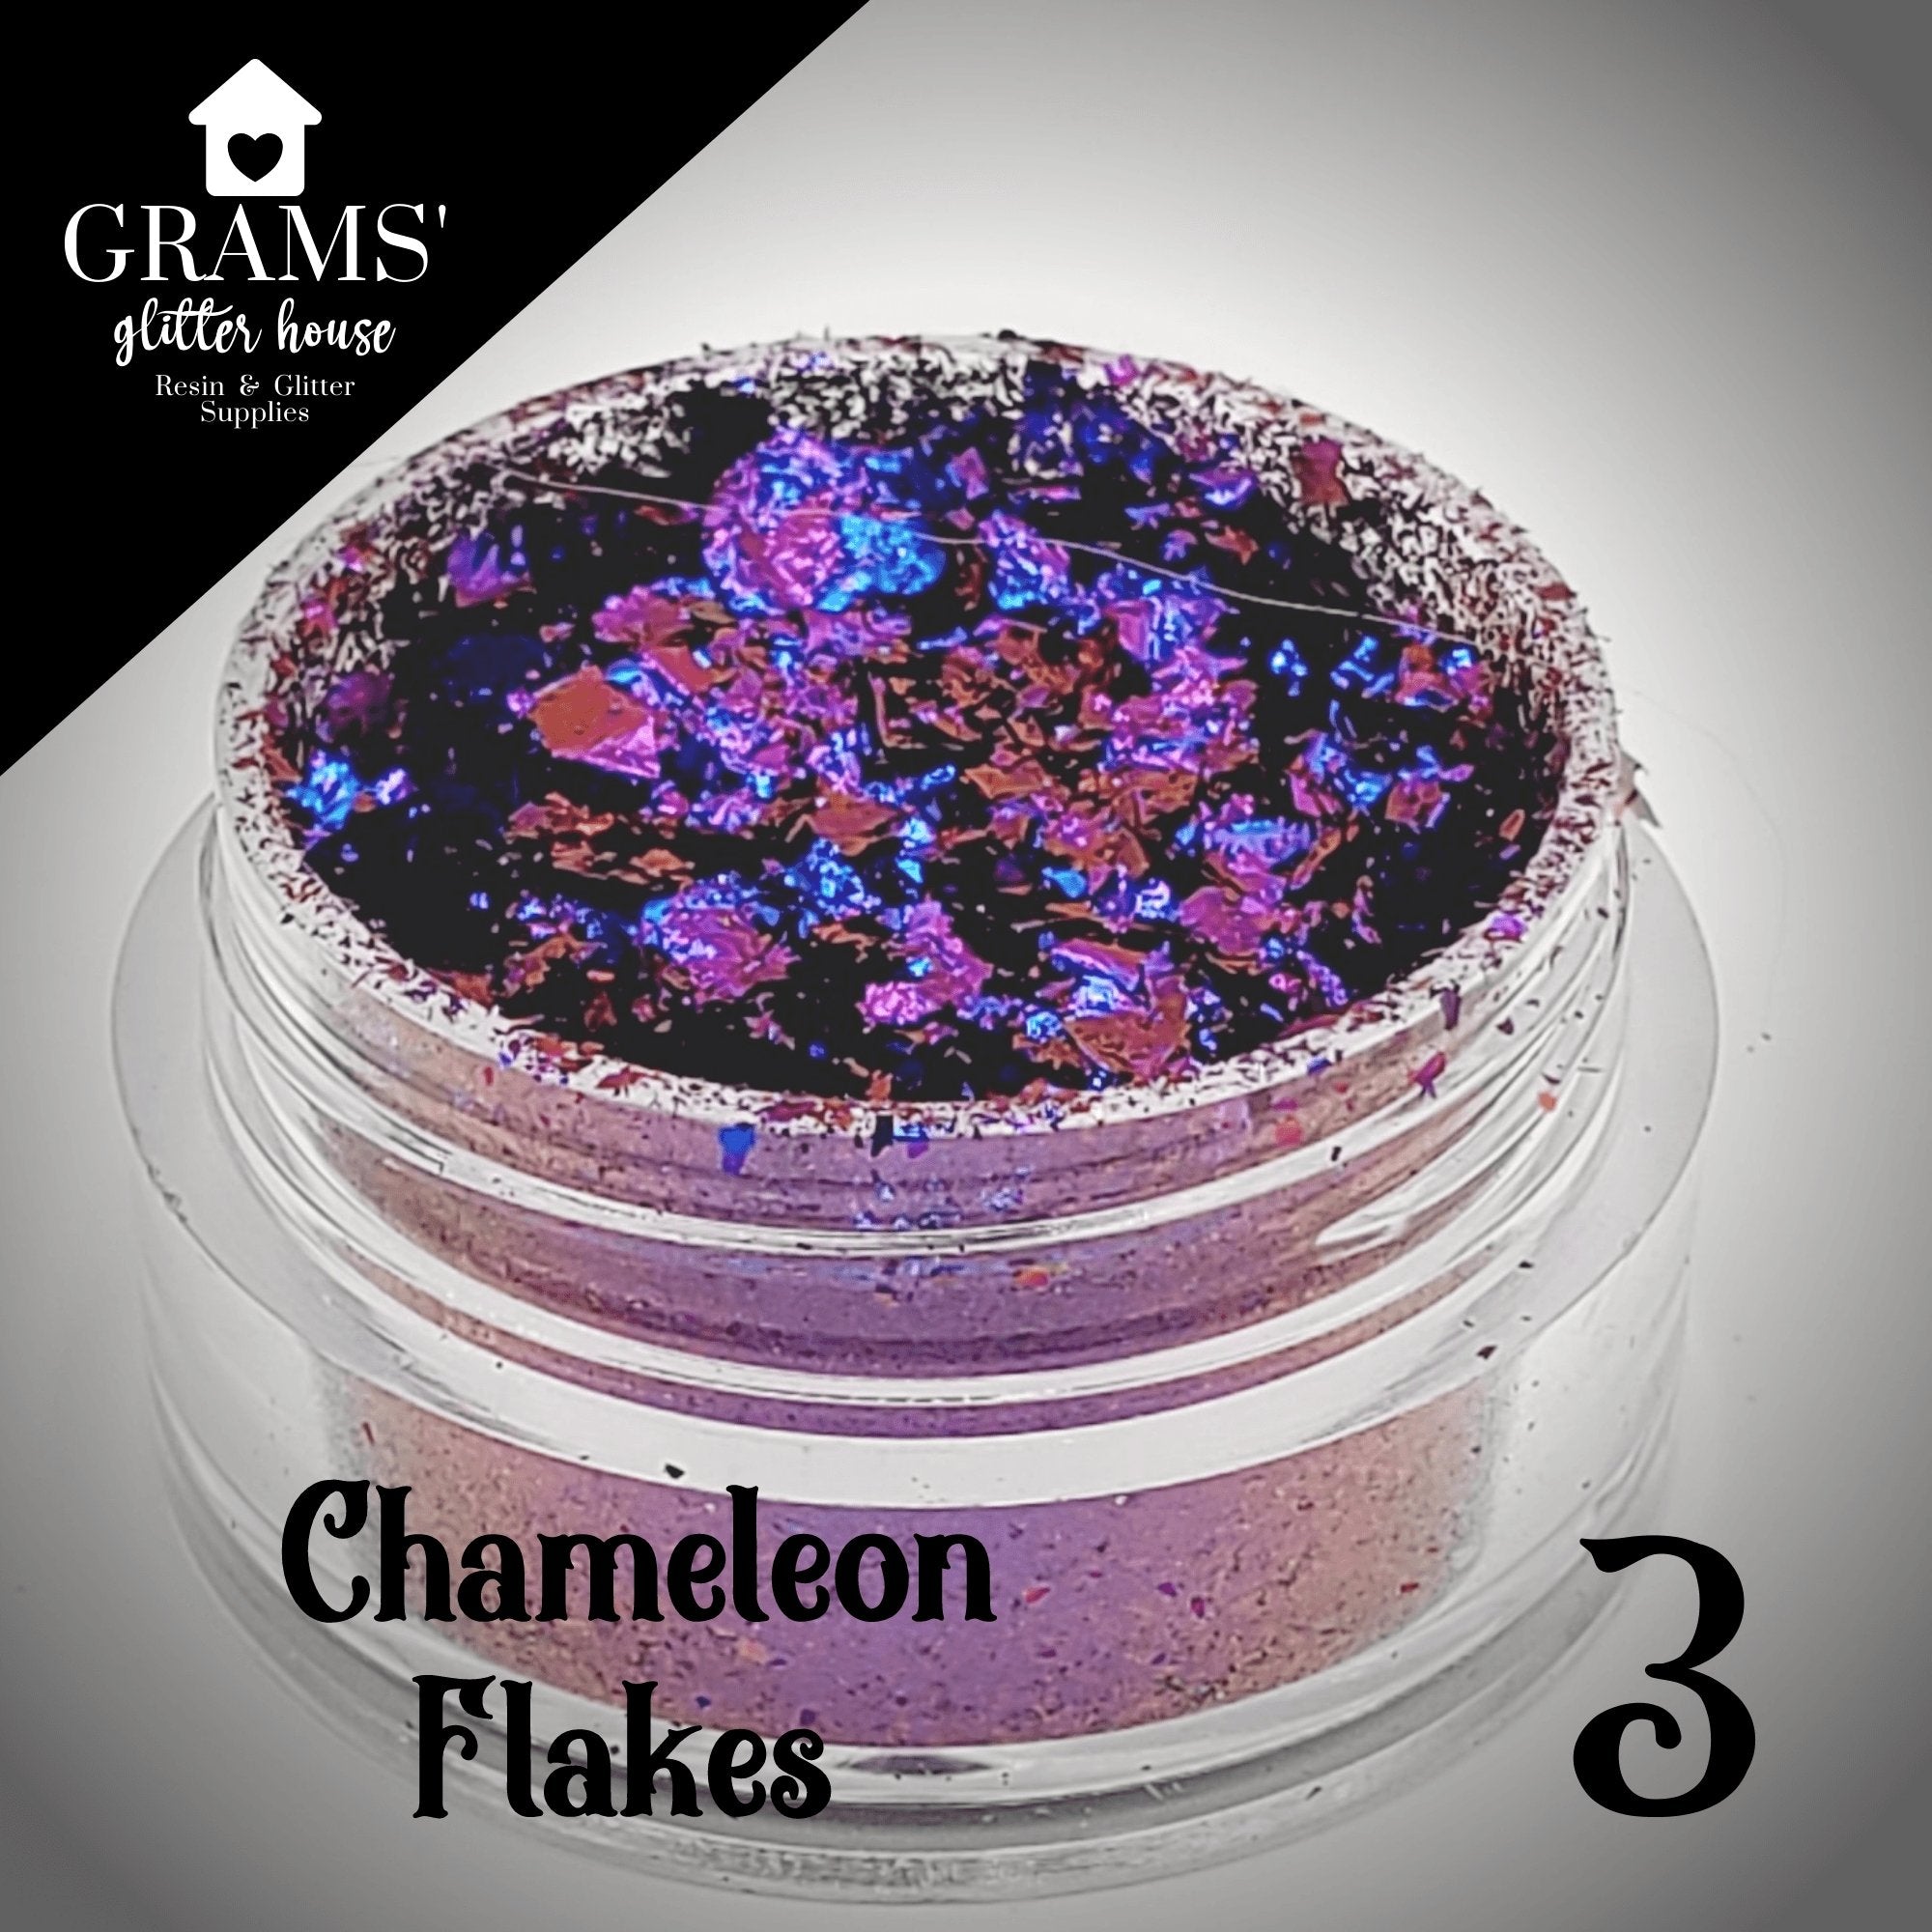 Grams' Glitter House Chameleon Flake 3 | Mold Flakes Chameleon Flakes